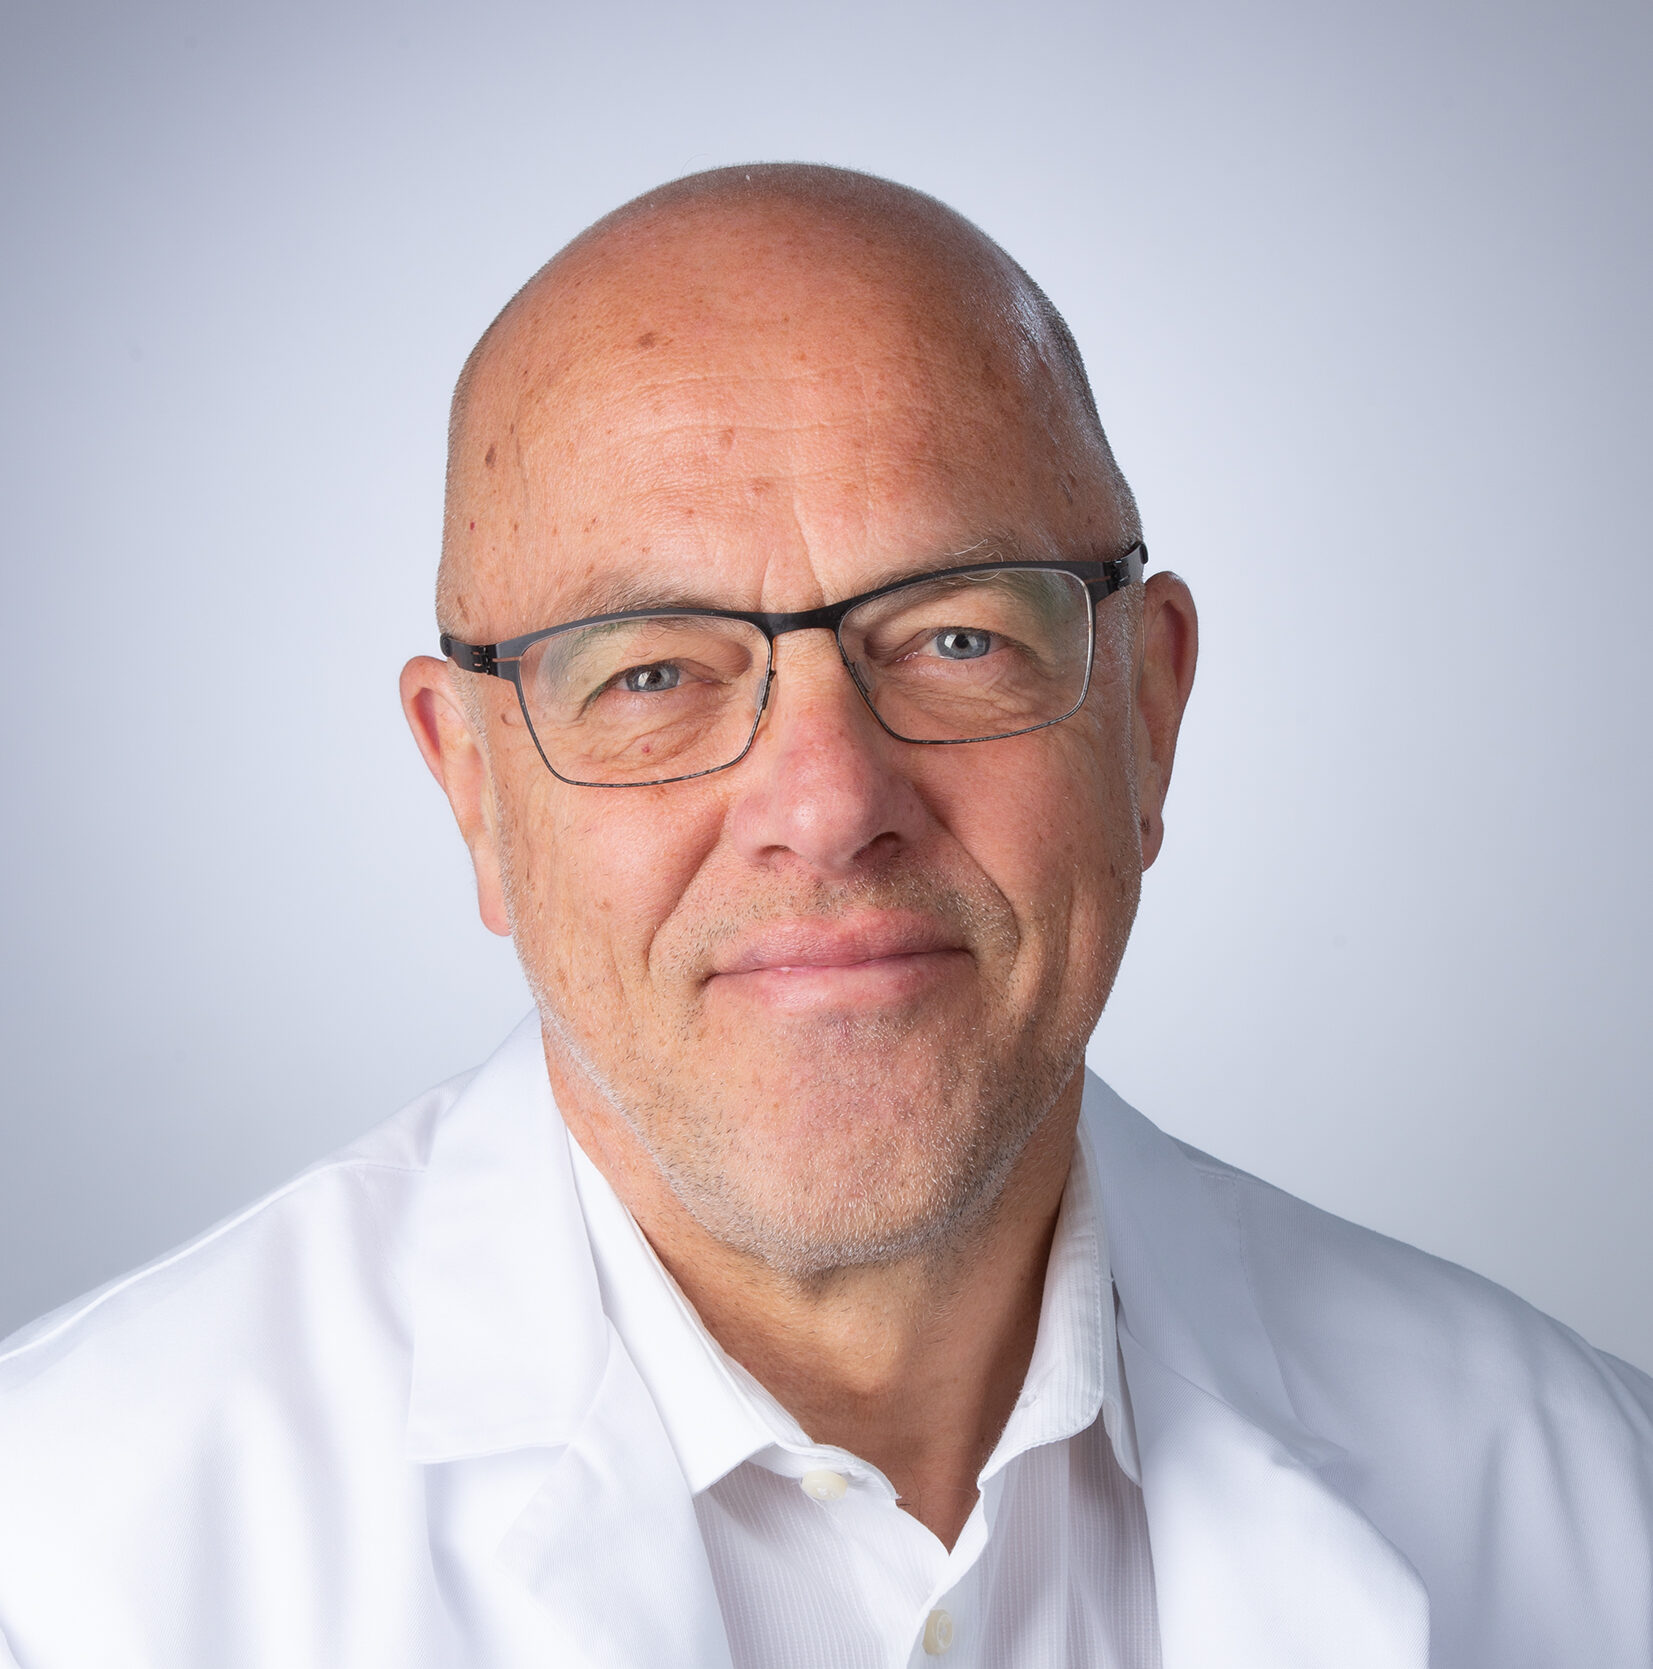 Strahlentherapeut Dr. med. Dieter Ross